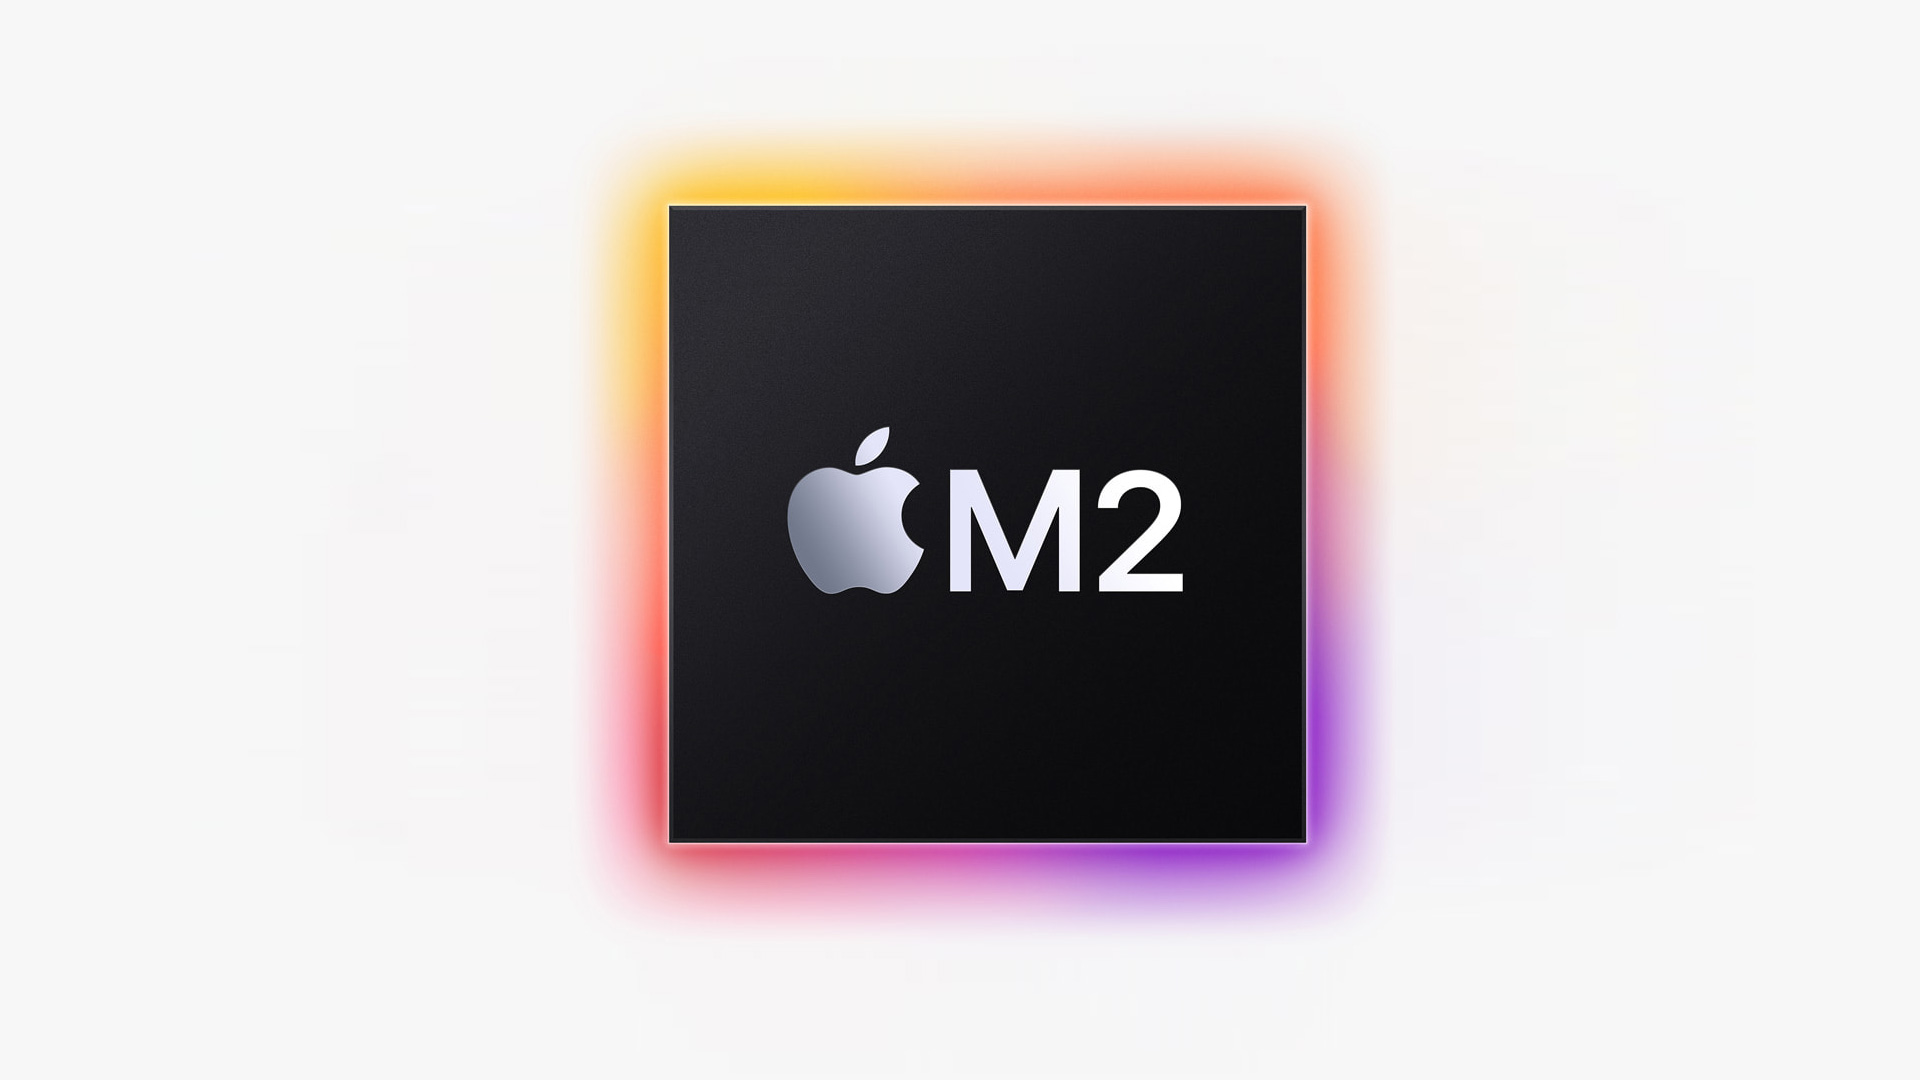 Het nieuwe vlaggenschip van Apple, de M2-processor, wordt onthuld op WWDC